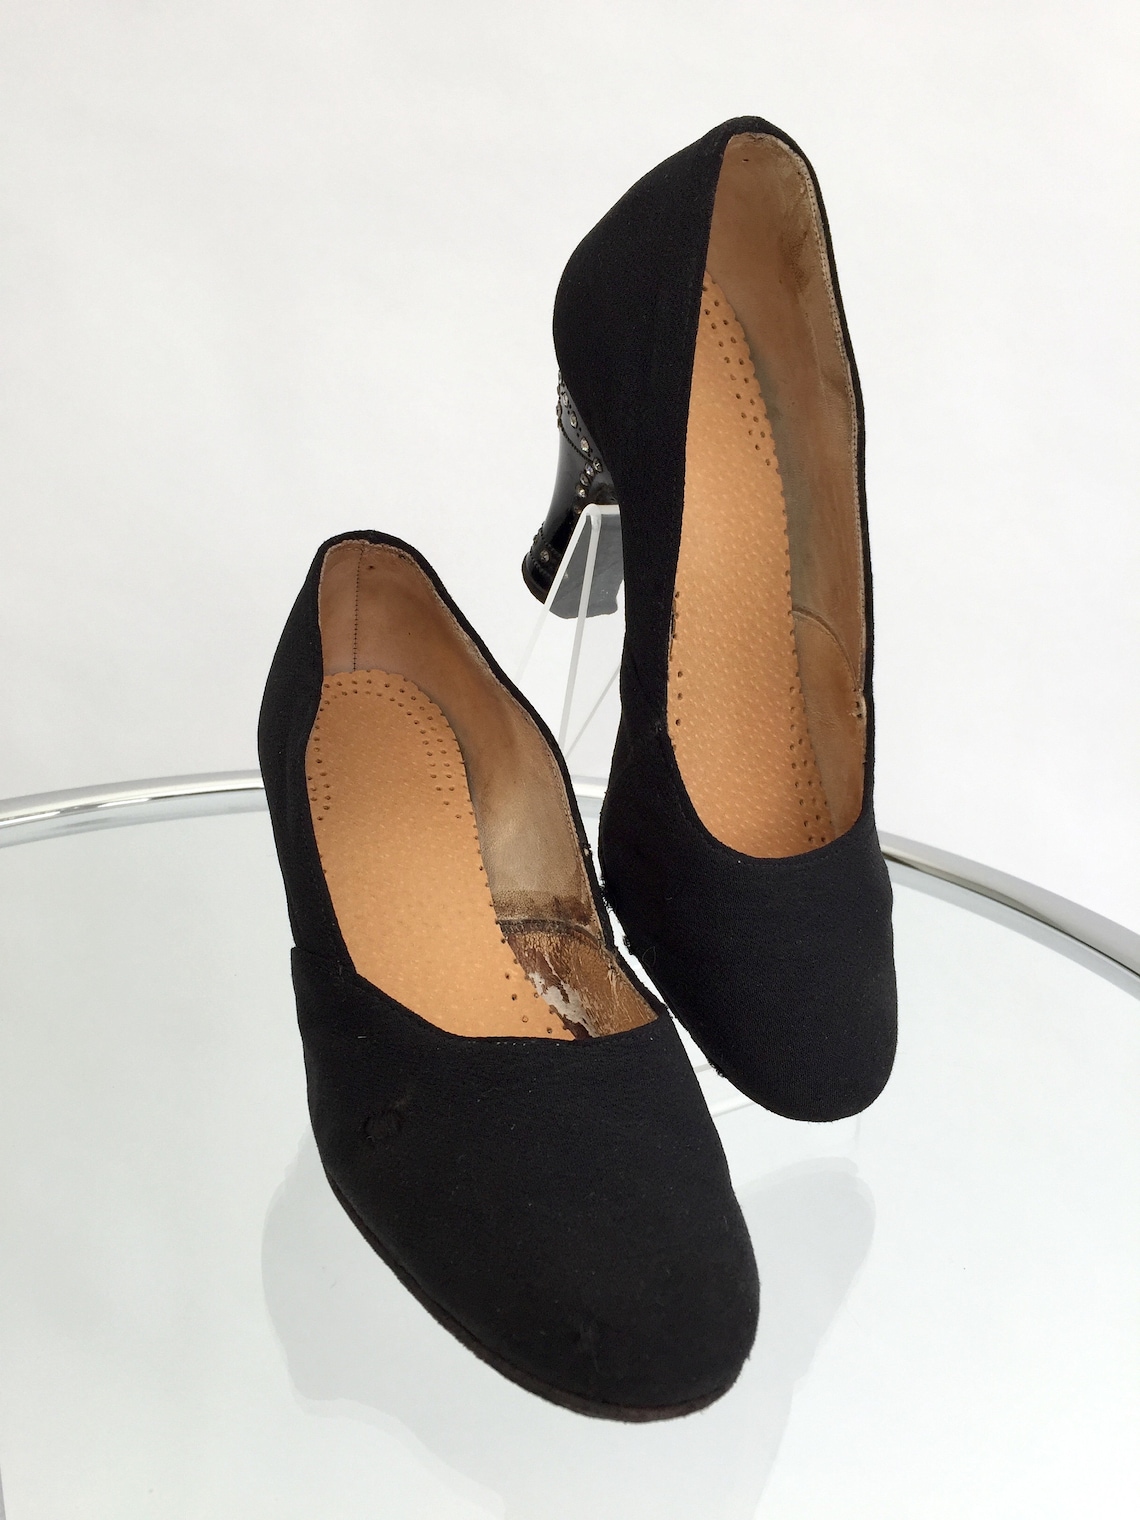 RESERVED 1920s shoes diamanté heels vintage antique flapper | Etsy